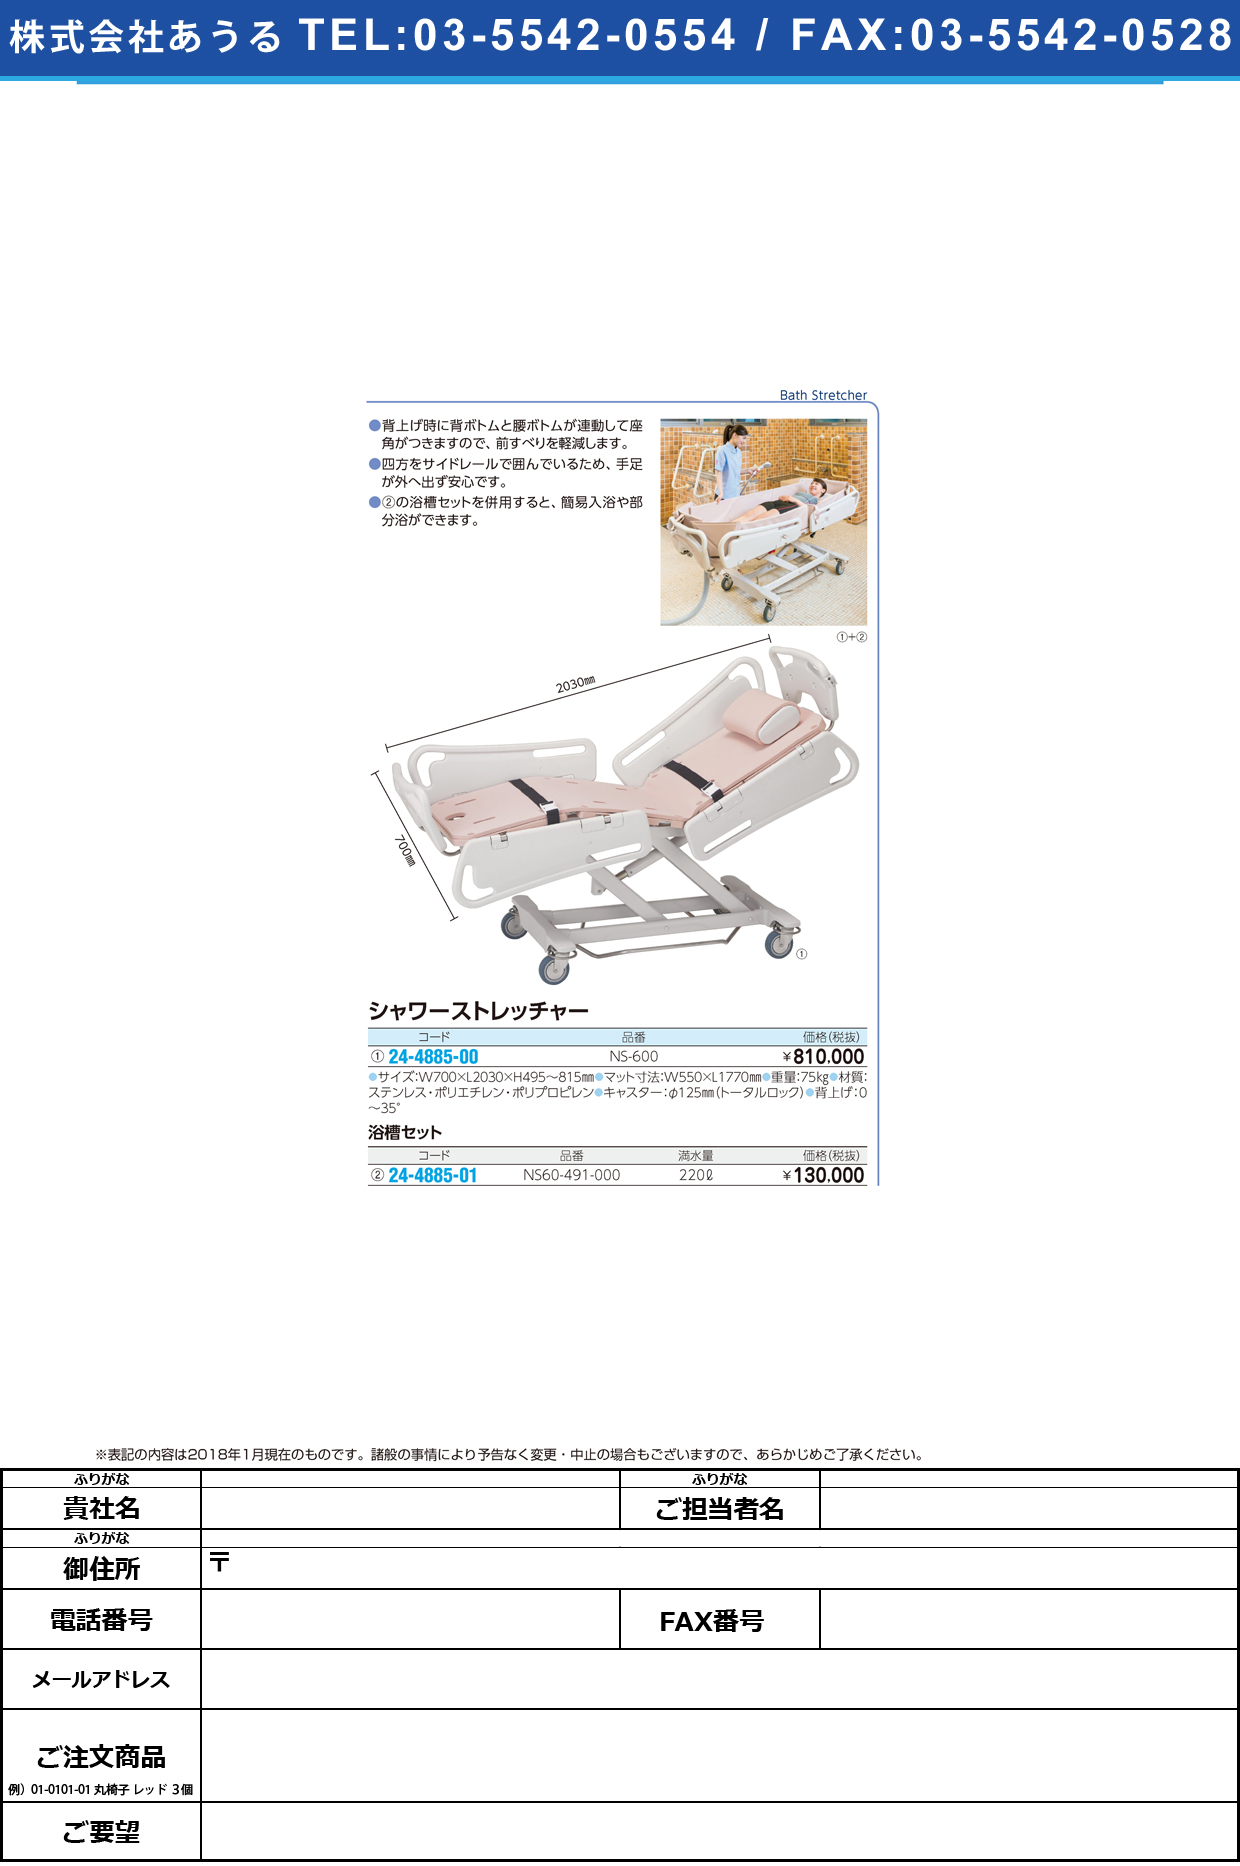 (24-4885-01)シャワーストレッチャー用浴槽セット NS60-491-000(NS600ﾖｳ ｼｬﾜｰｽﾄﾚｯﾁｬｰﾖｸｿｳｾｯﾄ(いうら)【1組単位】【2019年カタログ商品】